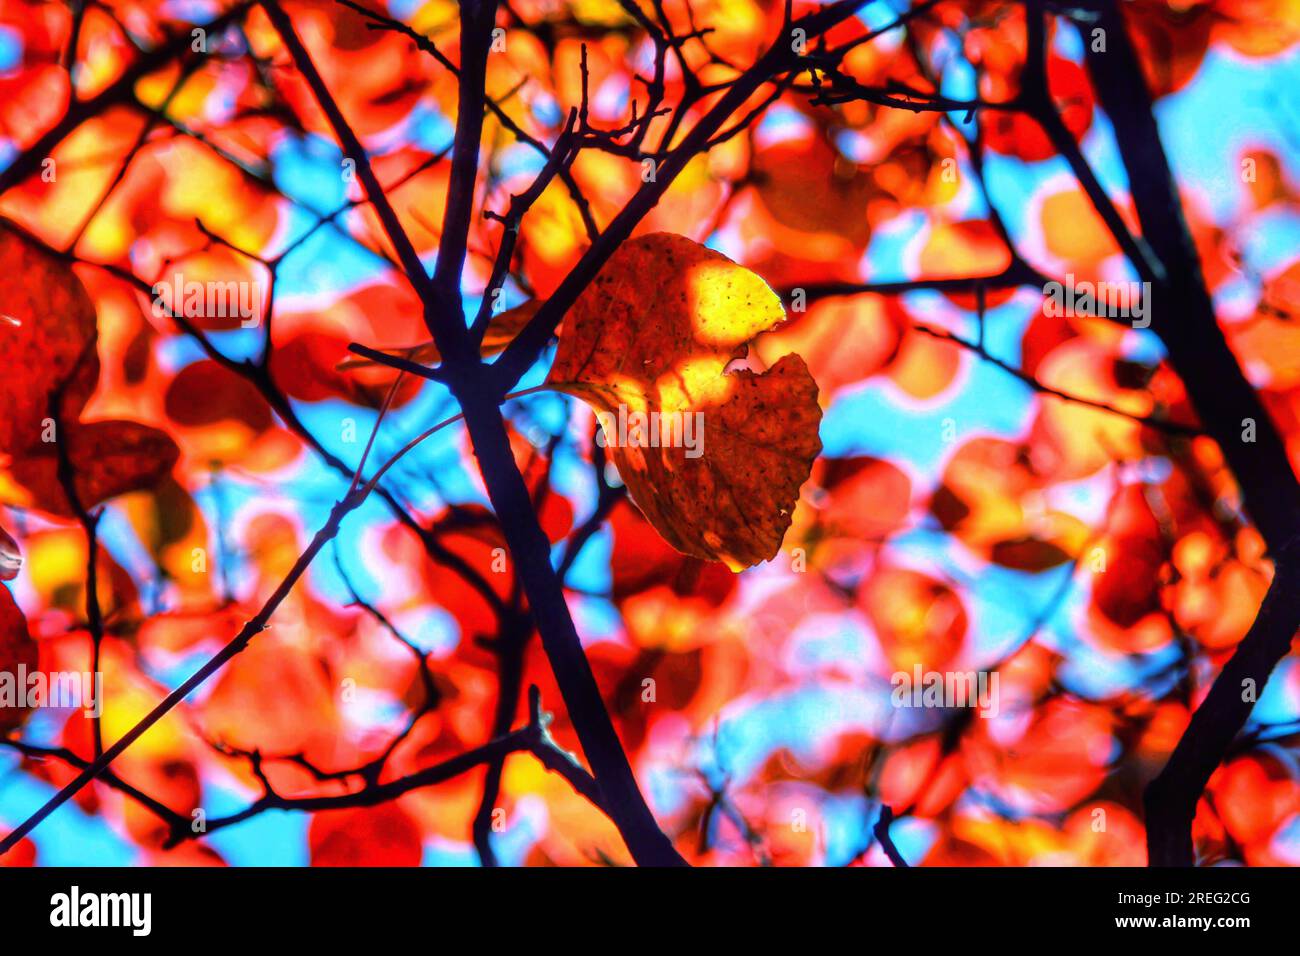 Ammira la bellezza radiosa delle foglie rosse su un albero mentre brillano sotto la luce del sole dorata. Il vivace display della natura catturerà i tuoi sensi. Foto Stock